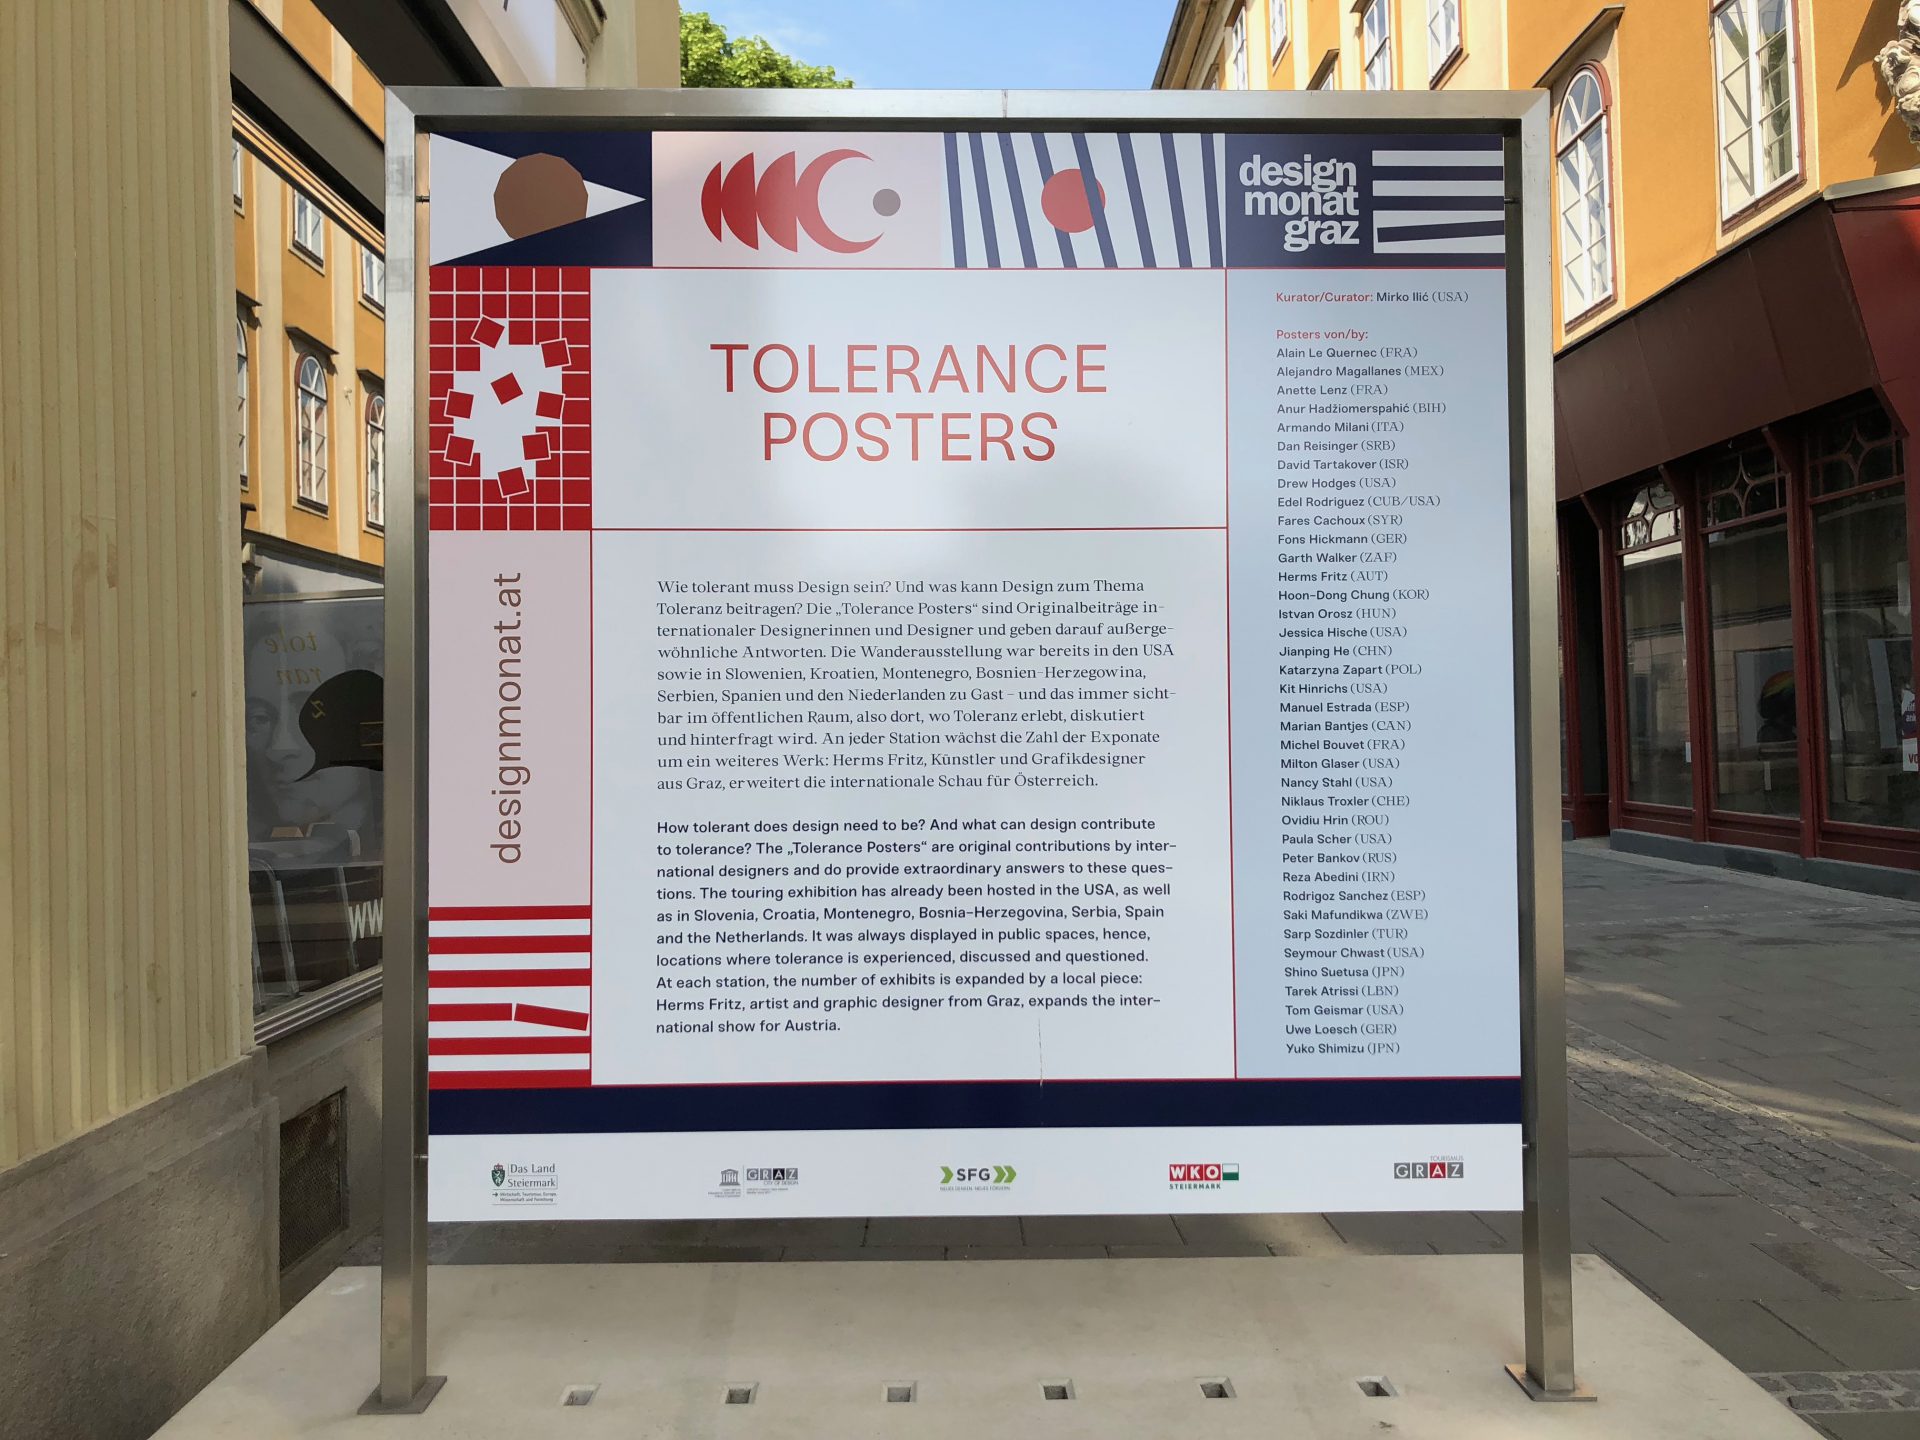 designmonat 2018 _ tolerance posters